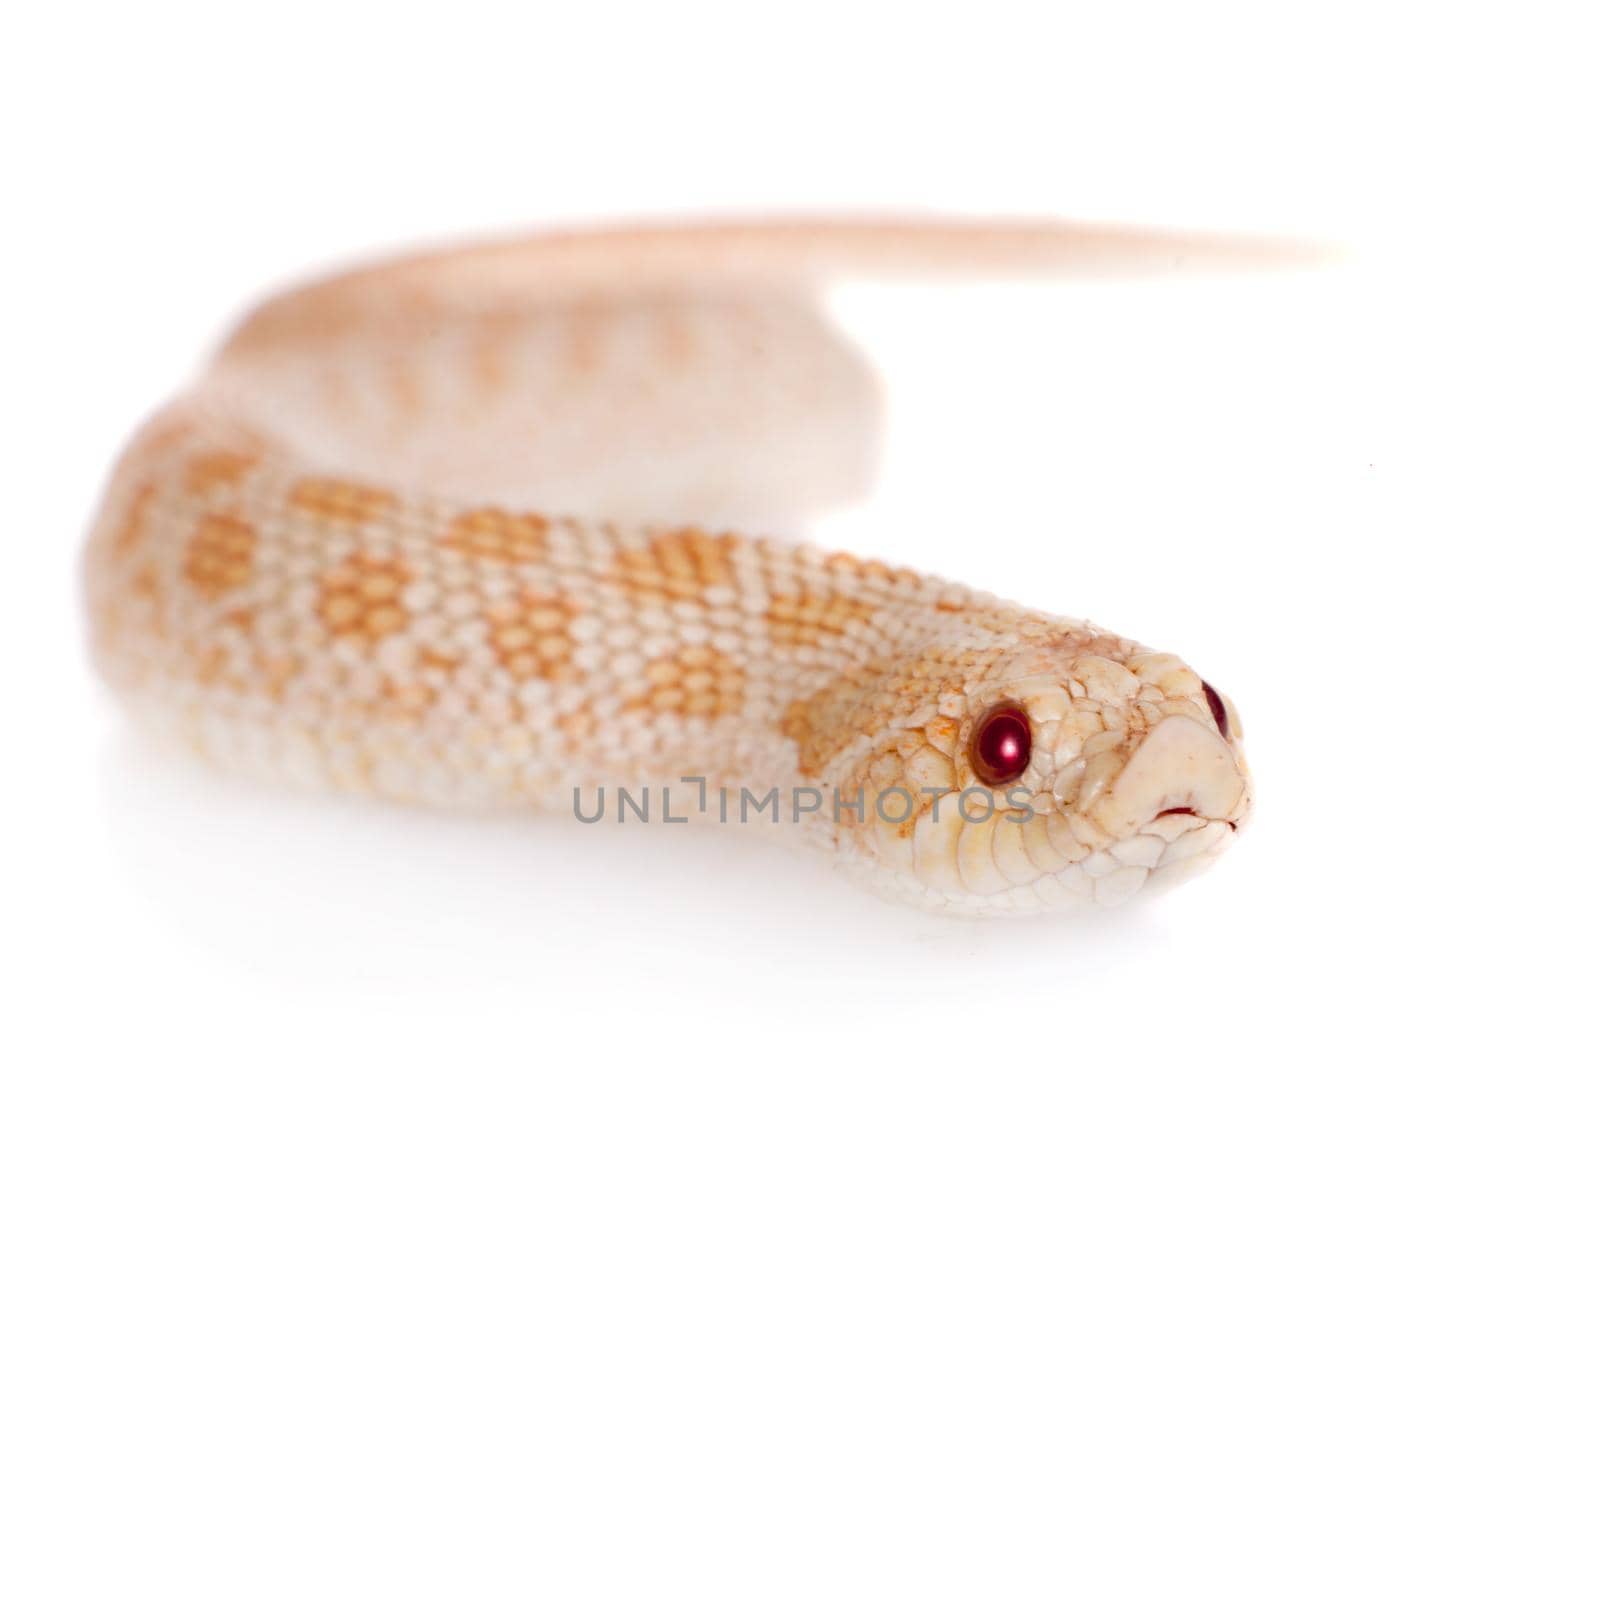 Western hog-nosed snake, Heterodon nasicus against white background by RosaJay